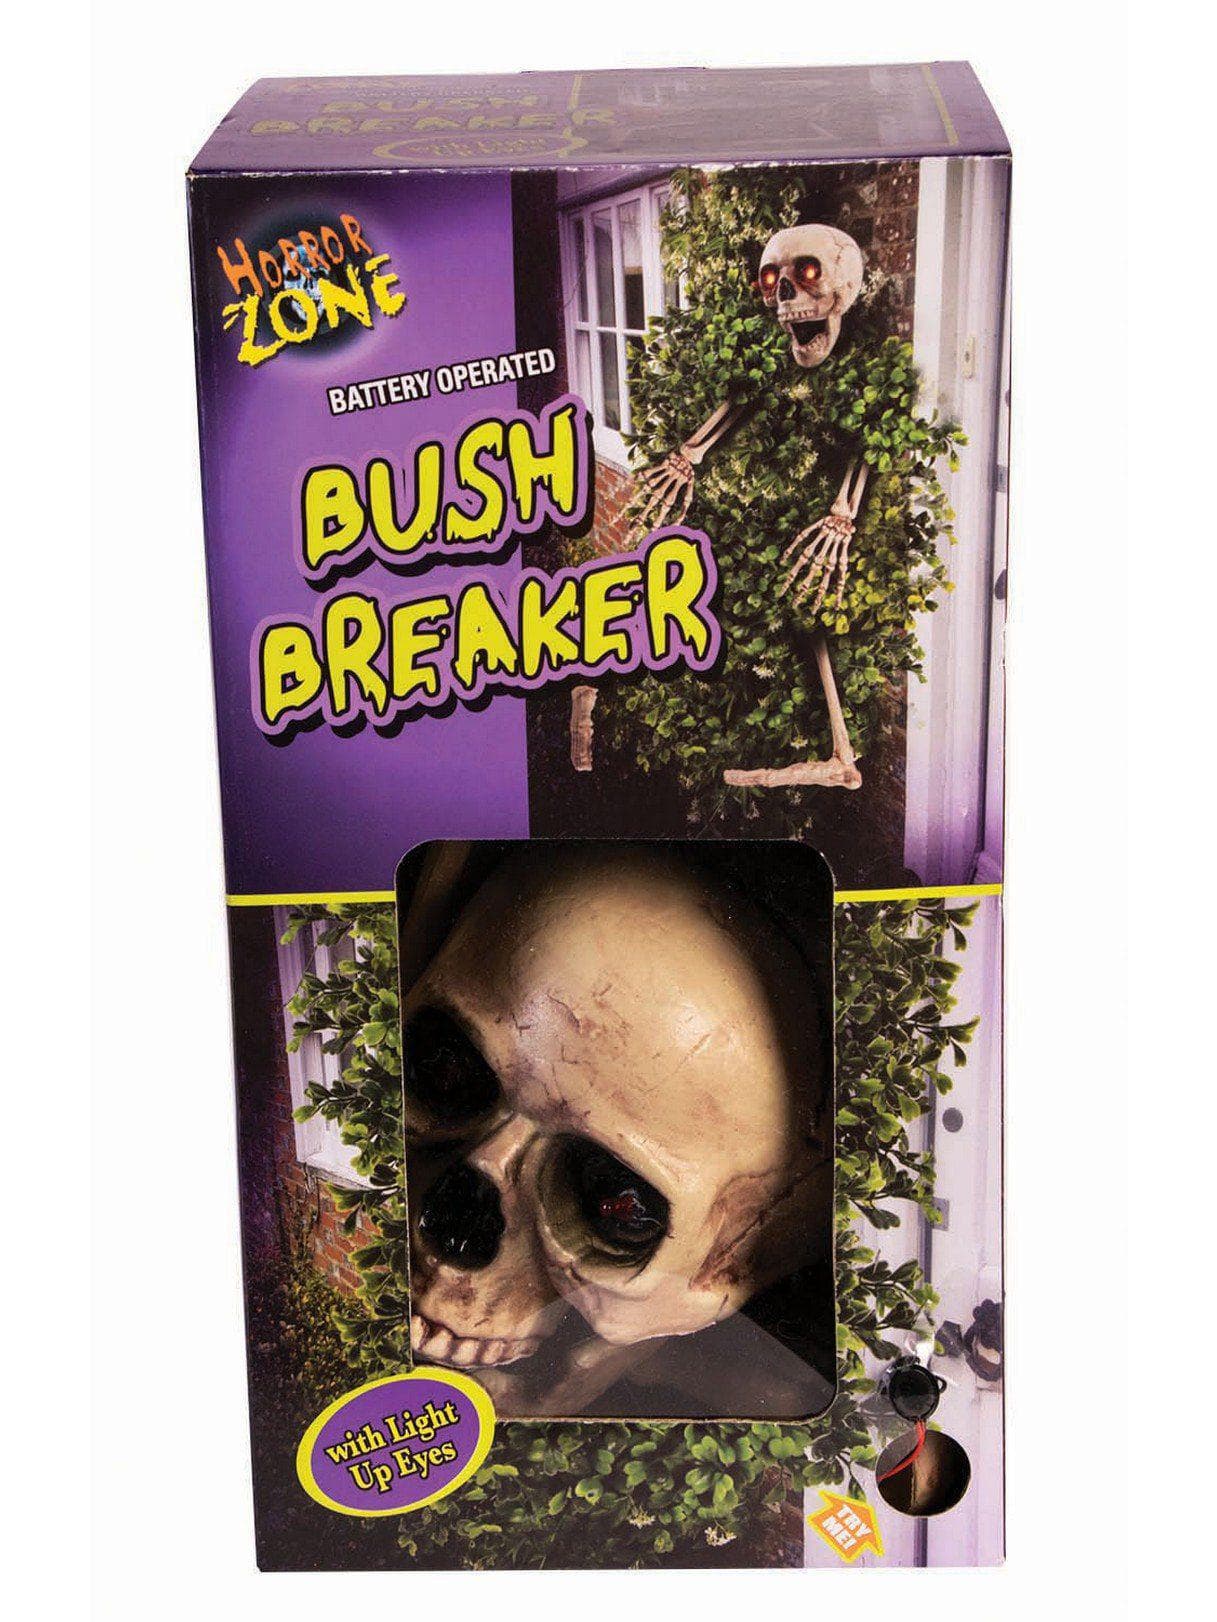 Skeleton Bush Breaker - costumes.com